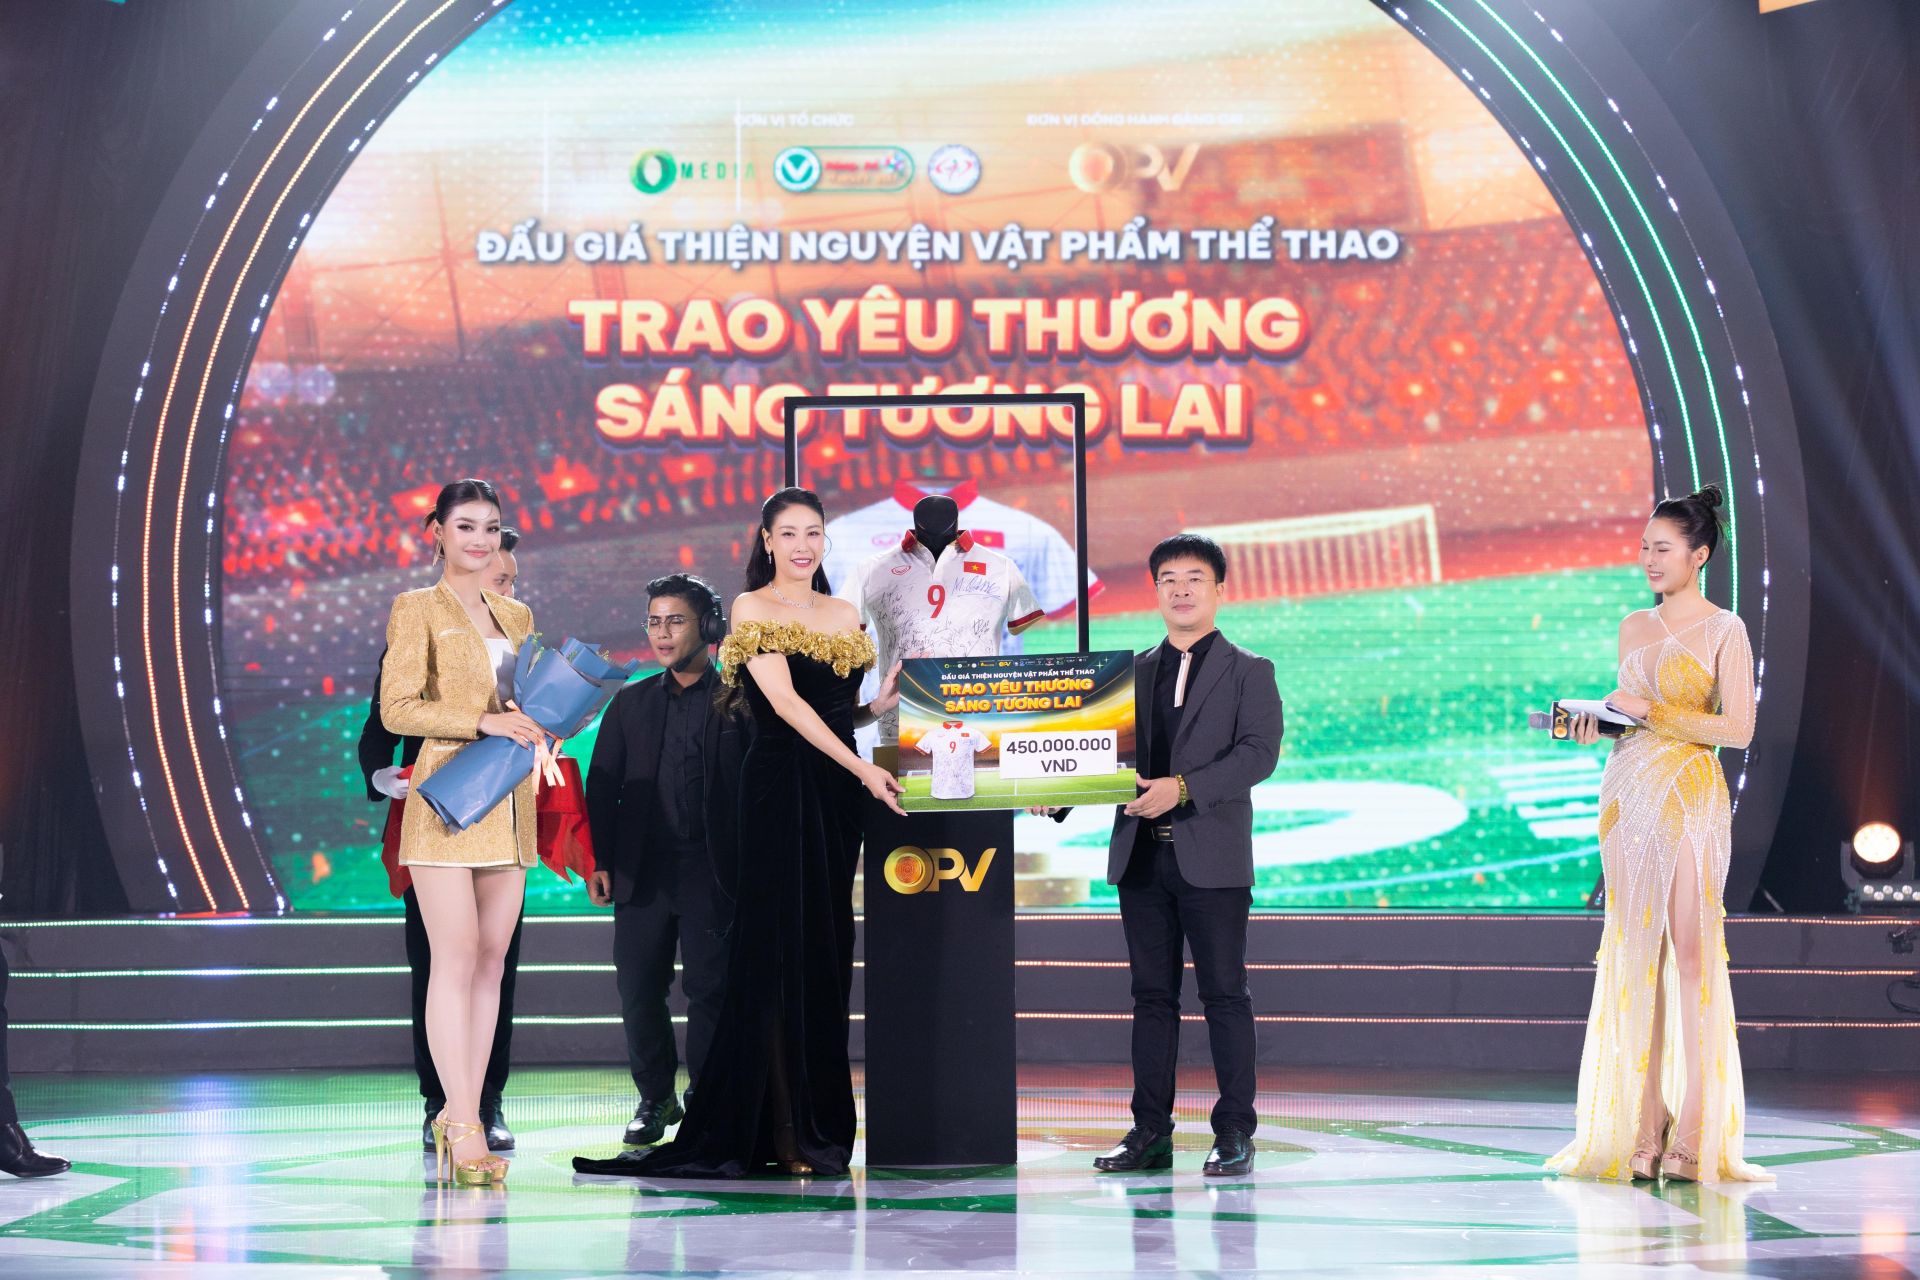 Ông Hà Ngọc Sơn – Chủ tịch HĐQT Tập đoàn Aikya Pharma, Tổng Giám đốc TV.PHARM sở hữu chiếc áo đấu số 9 của tuyển thủ bóng đá nữ Huỳnh Như